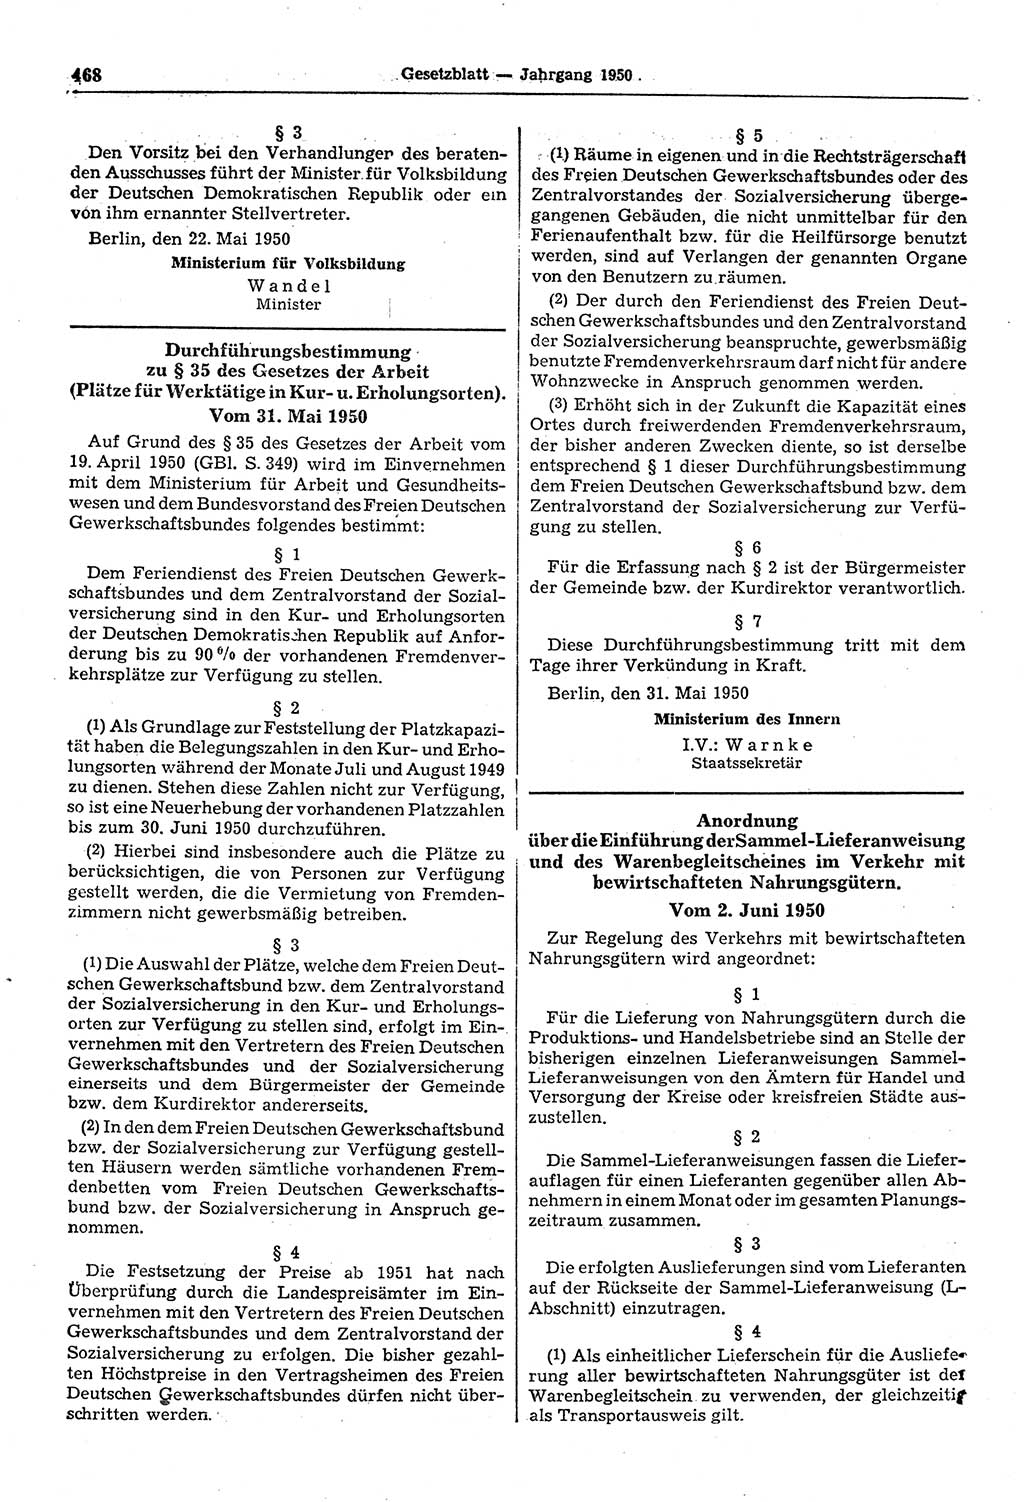 Gesetzblatt (GBl.) der Deutschen Demokratischen Republik (DDR) 1950, Seite 468 (GBl. DDR 1950, S. 468)